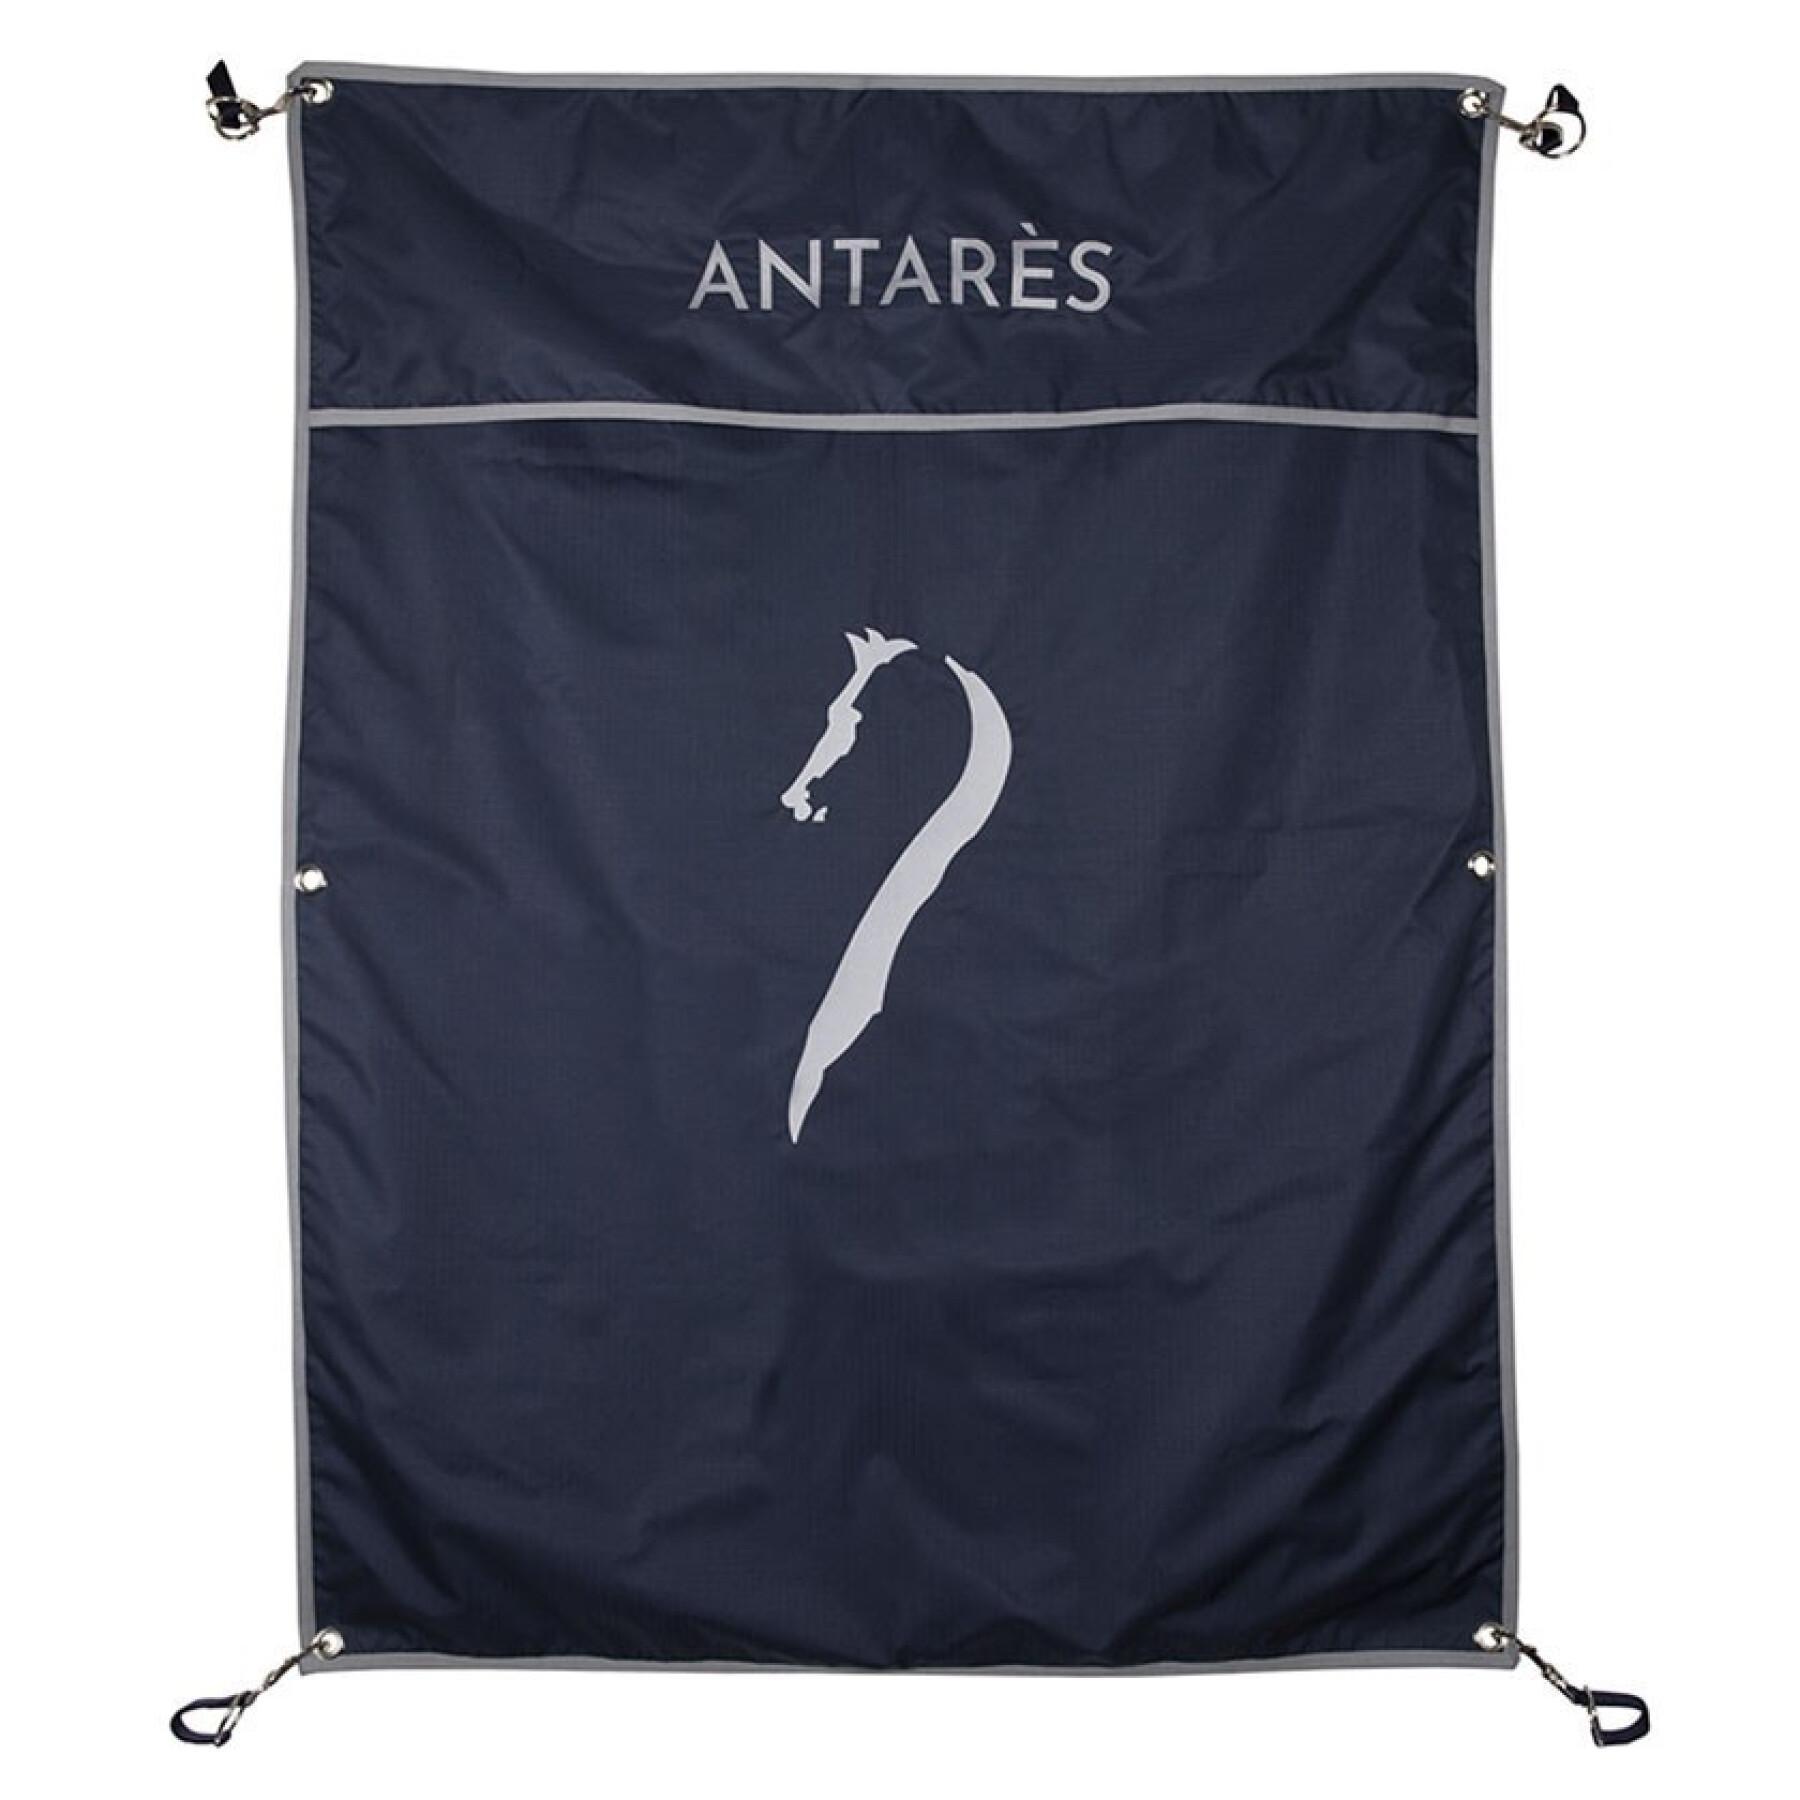 Caixa suspensa Antarès